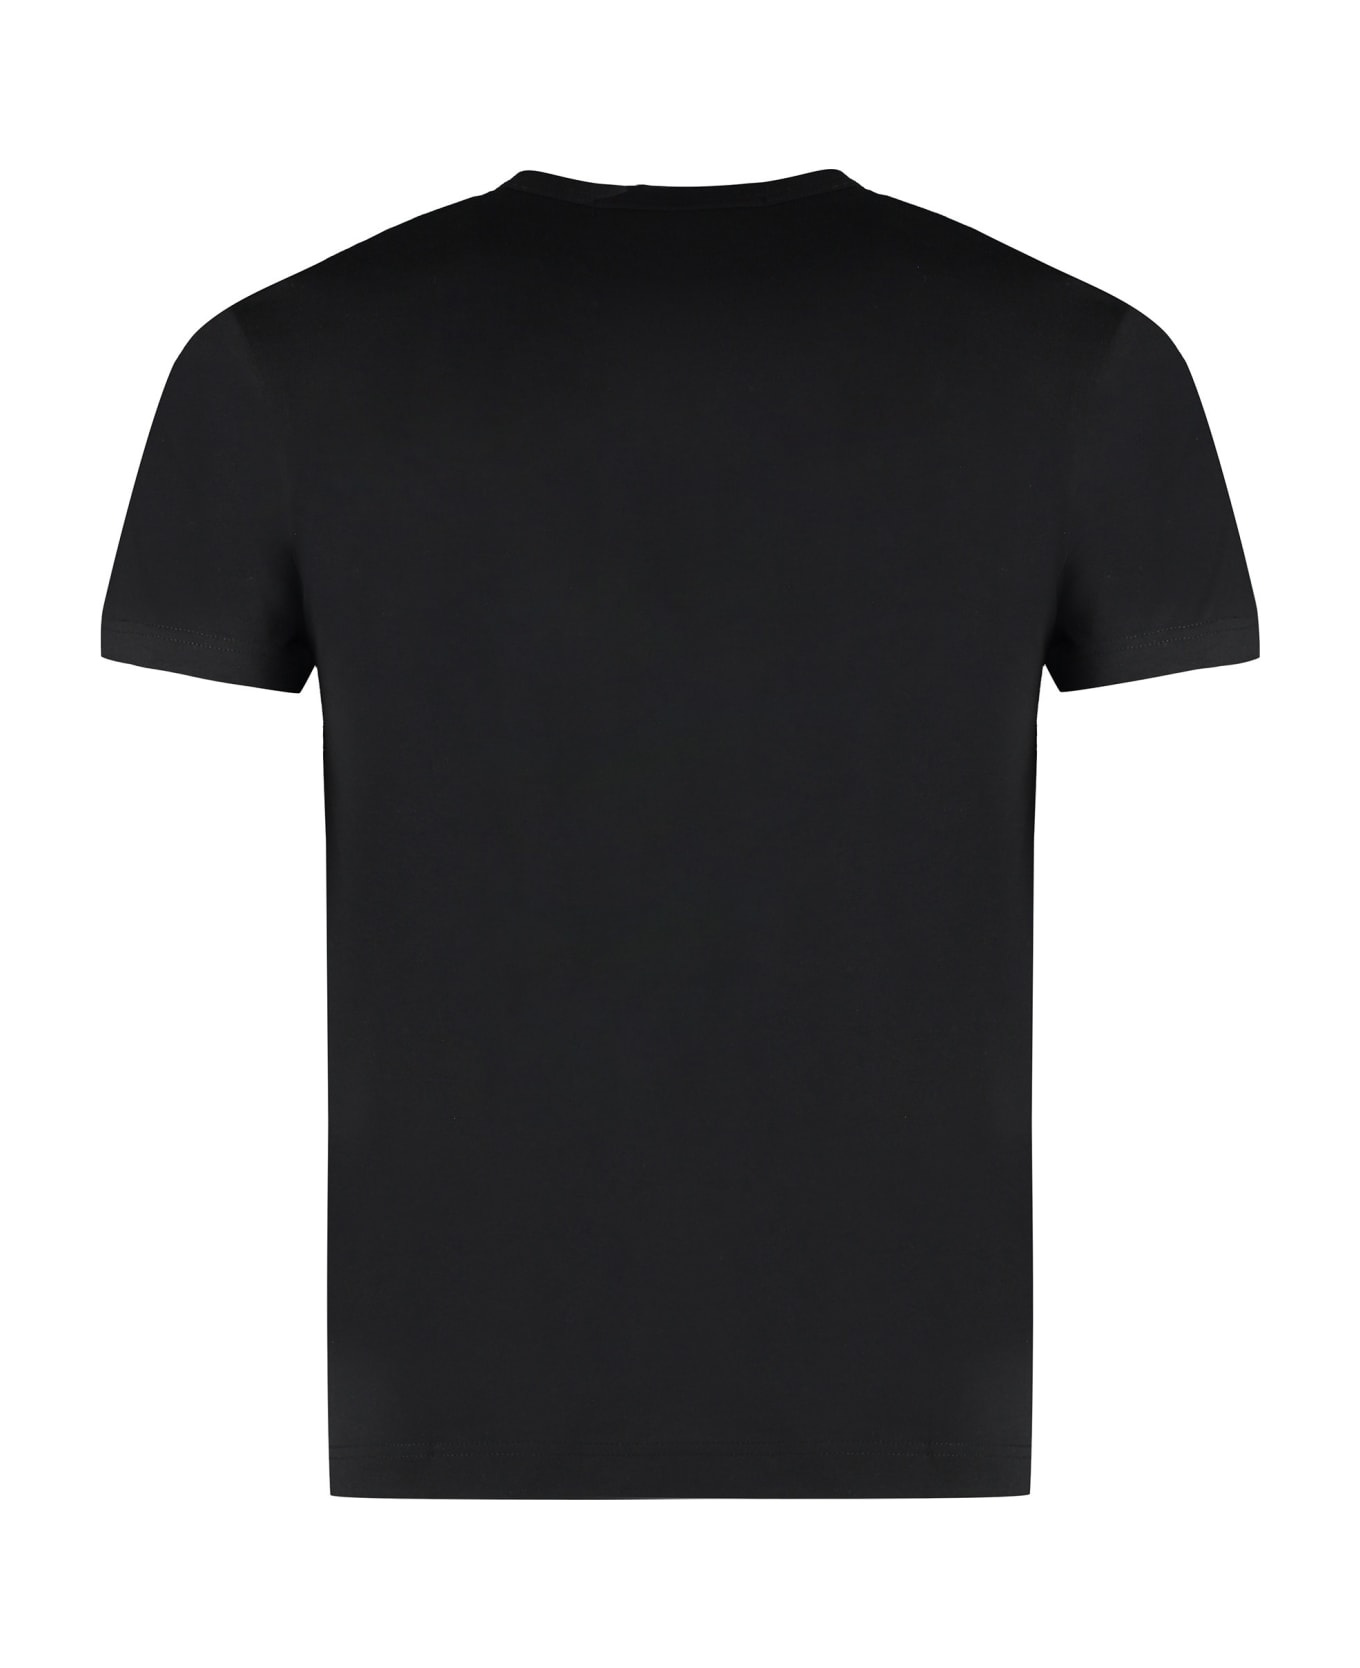 Comme des Garçons Shirt Cotton Crew-neck T-shirt - black シャツ